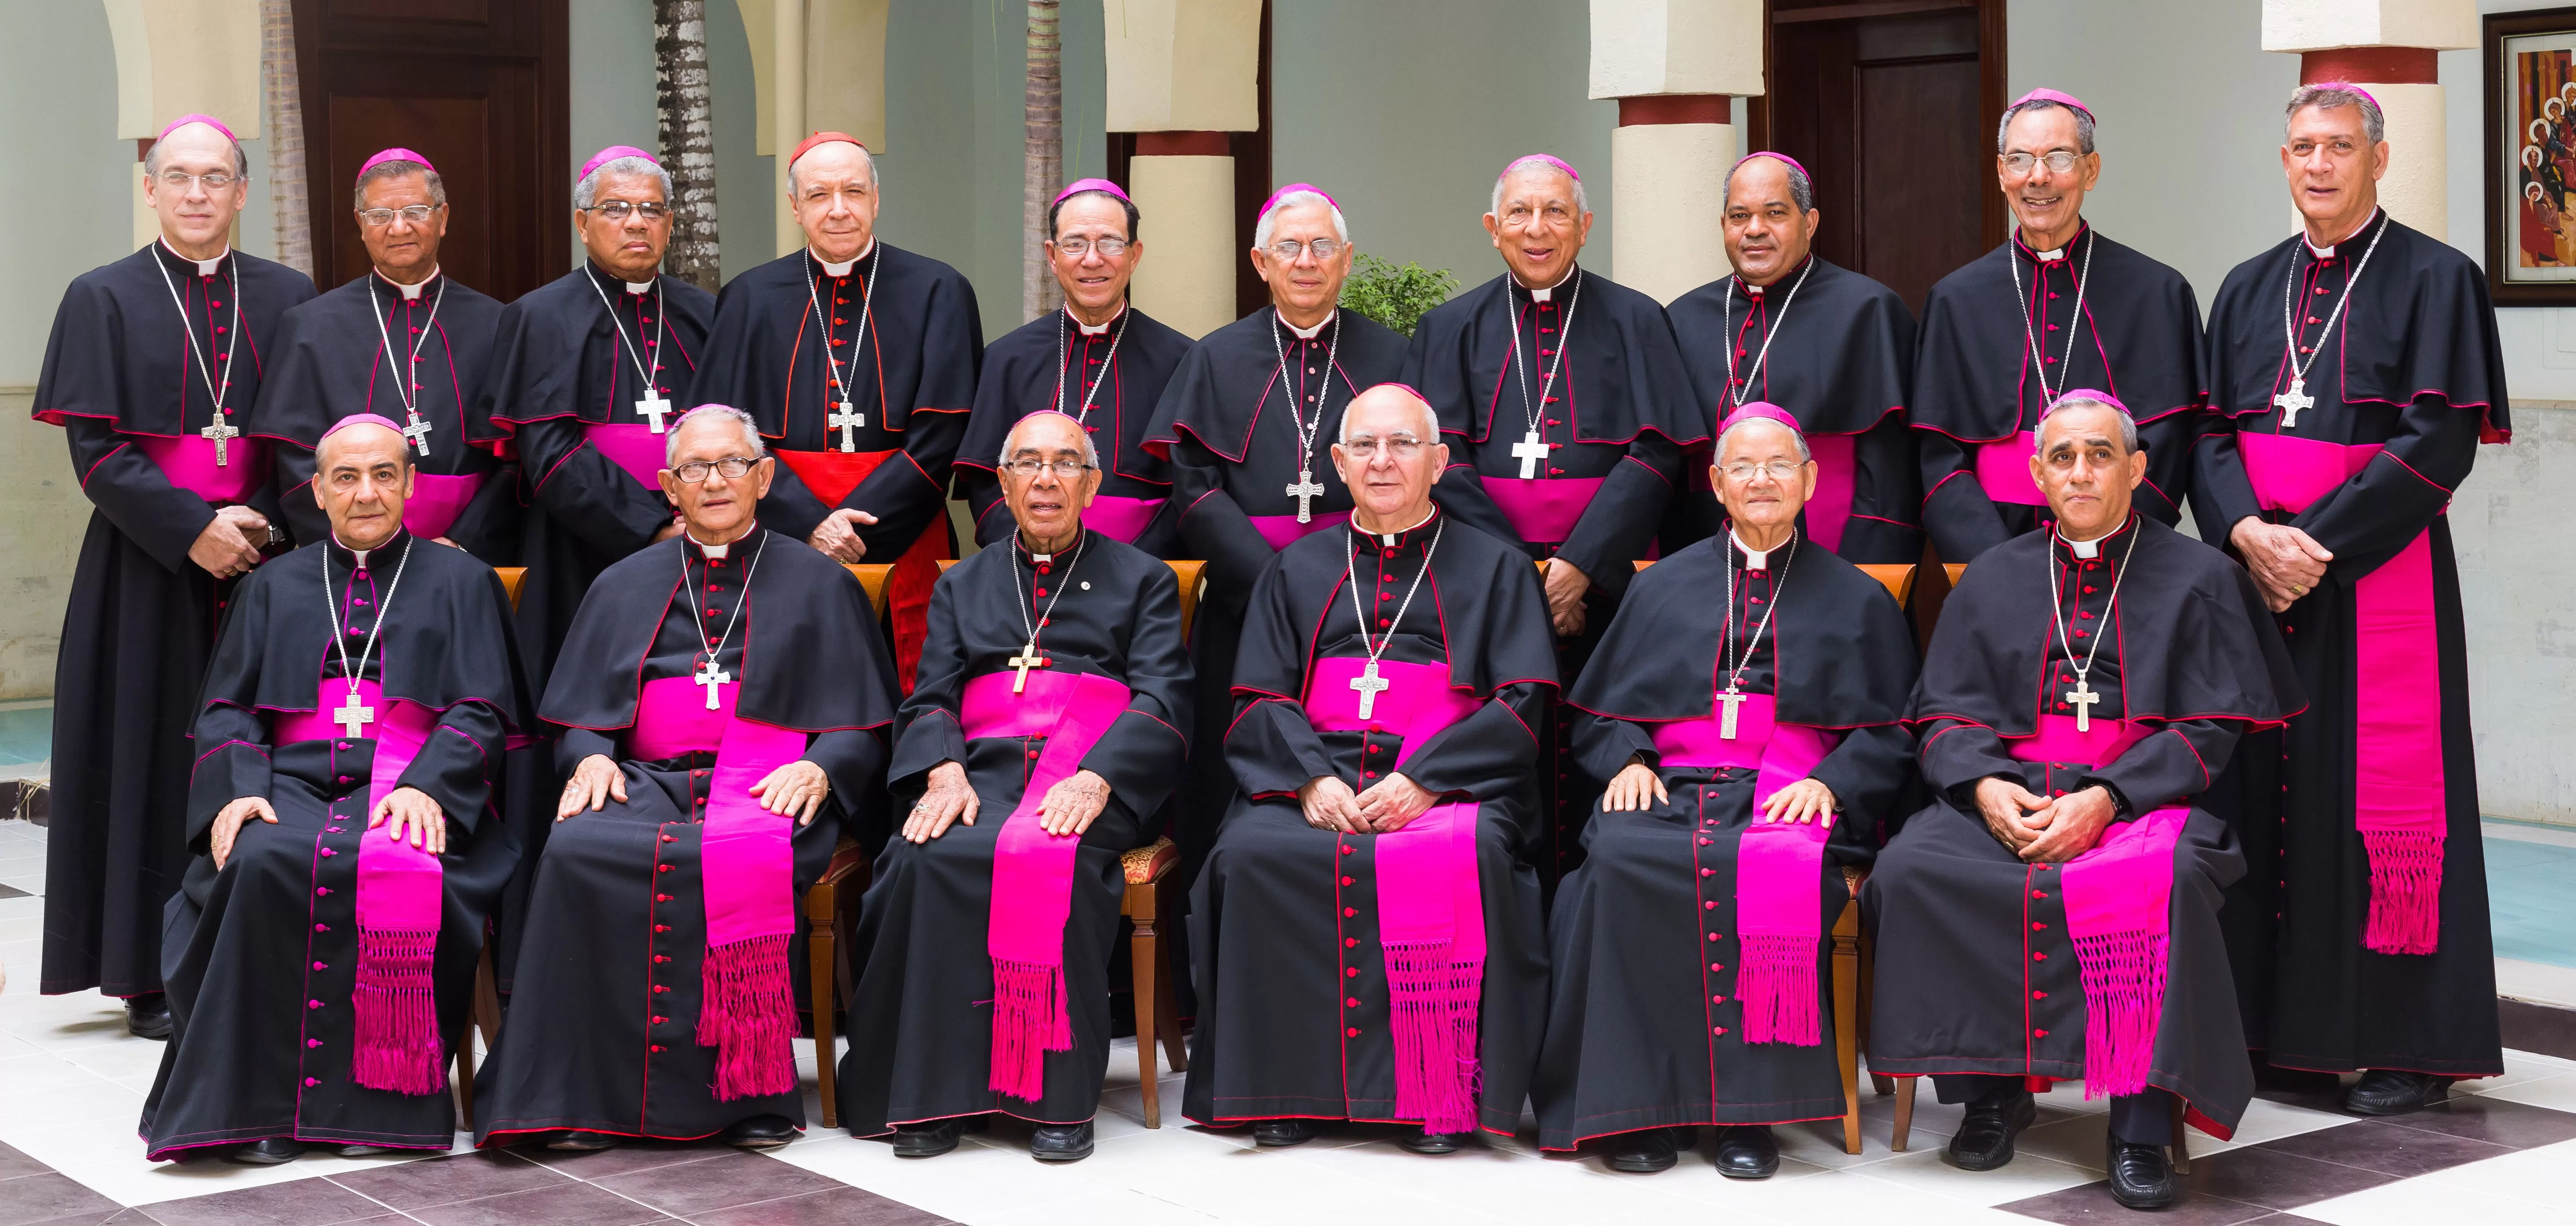 Obispos piden una participación activa y consciente de los ciudadanos en las elecciones